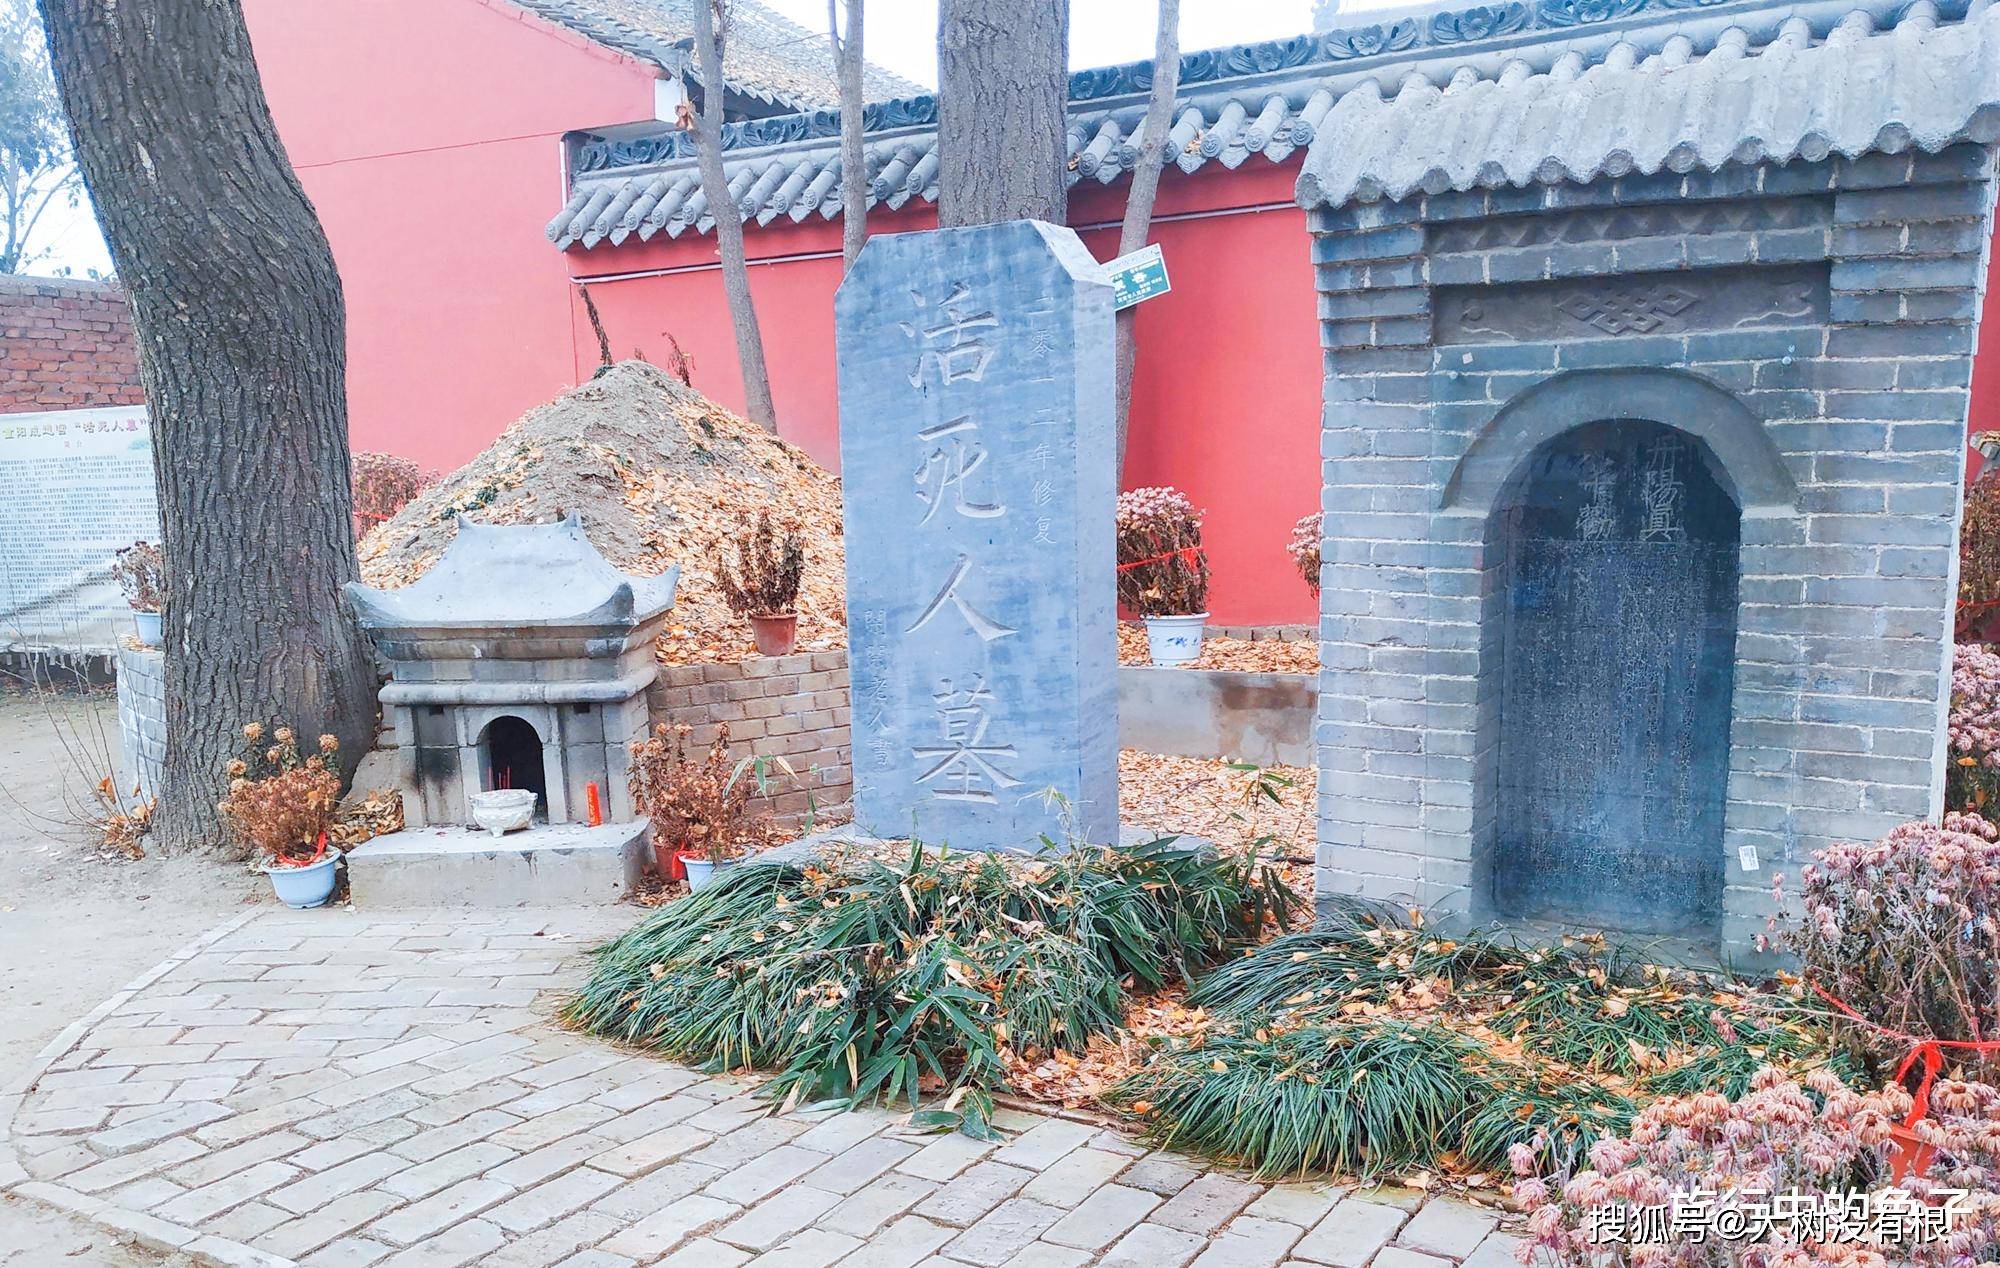 原创"活死人墓"真实存在?就在终南山下重阳宫旁